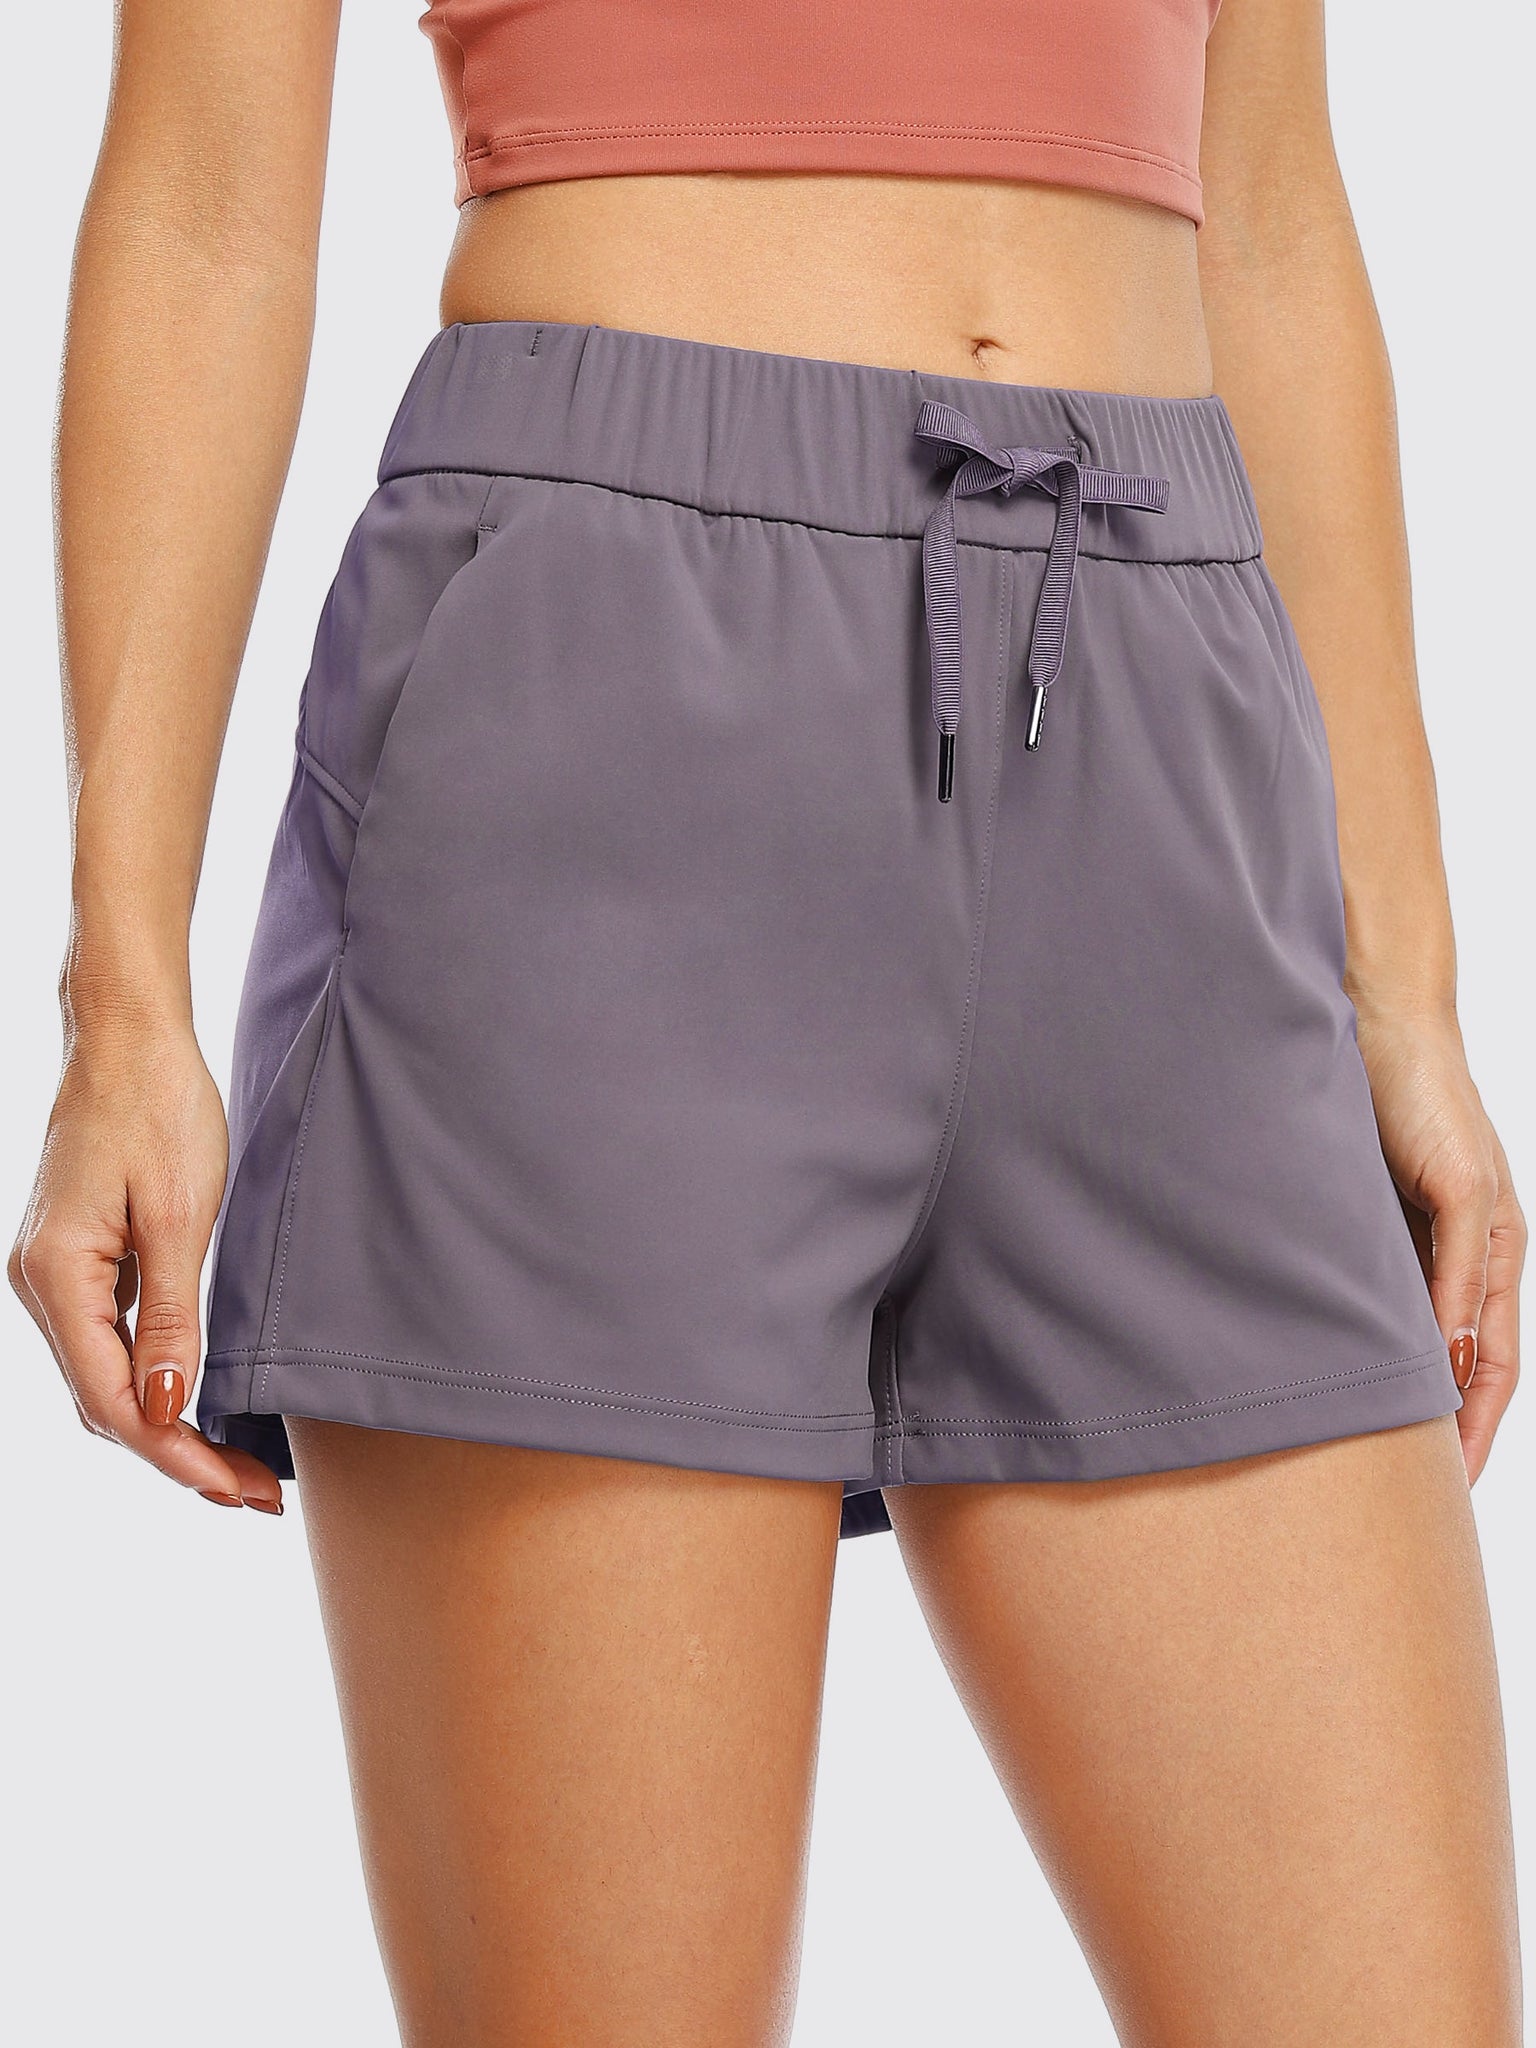 Willit Women's Summer 2.5 Inch Shorts_Graphite Purple3